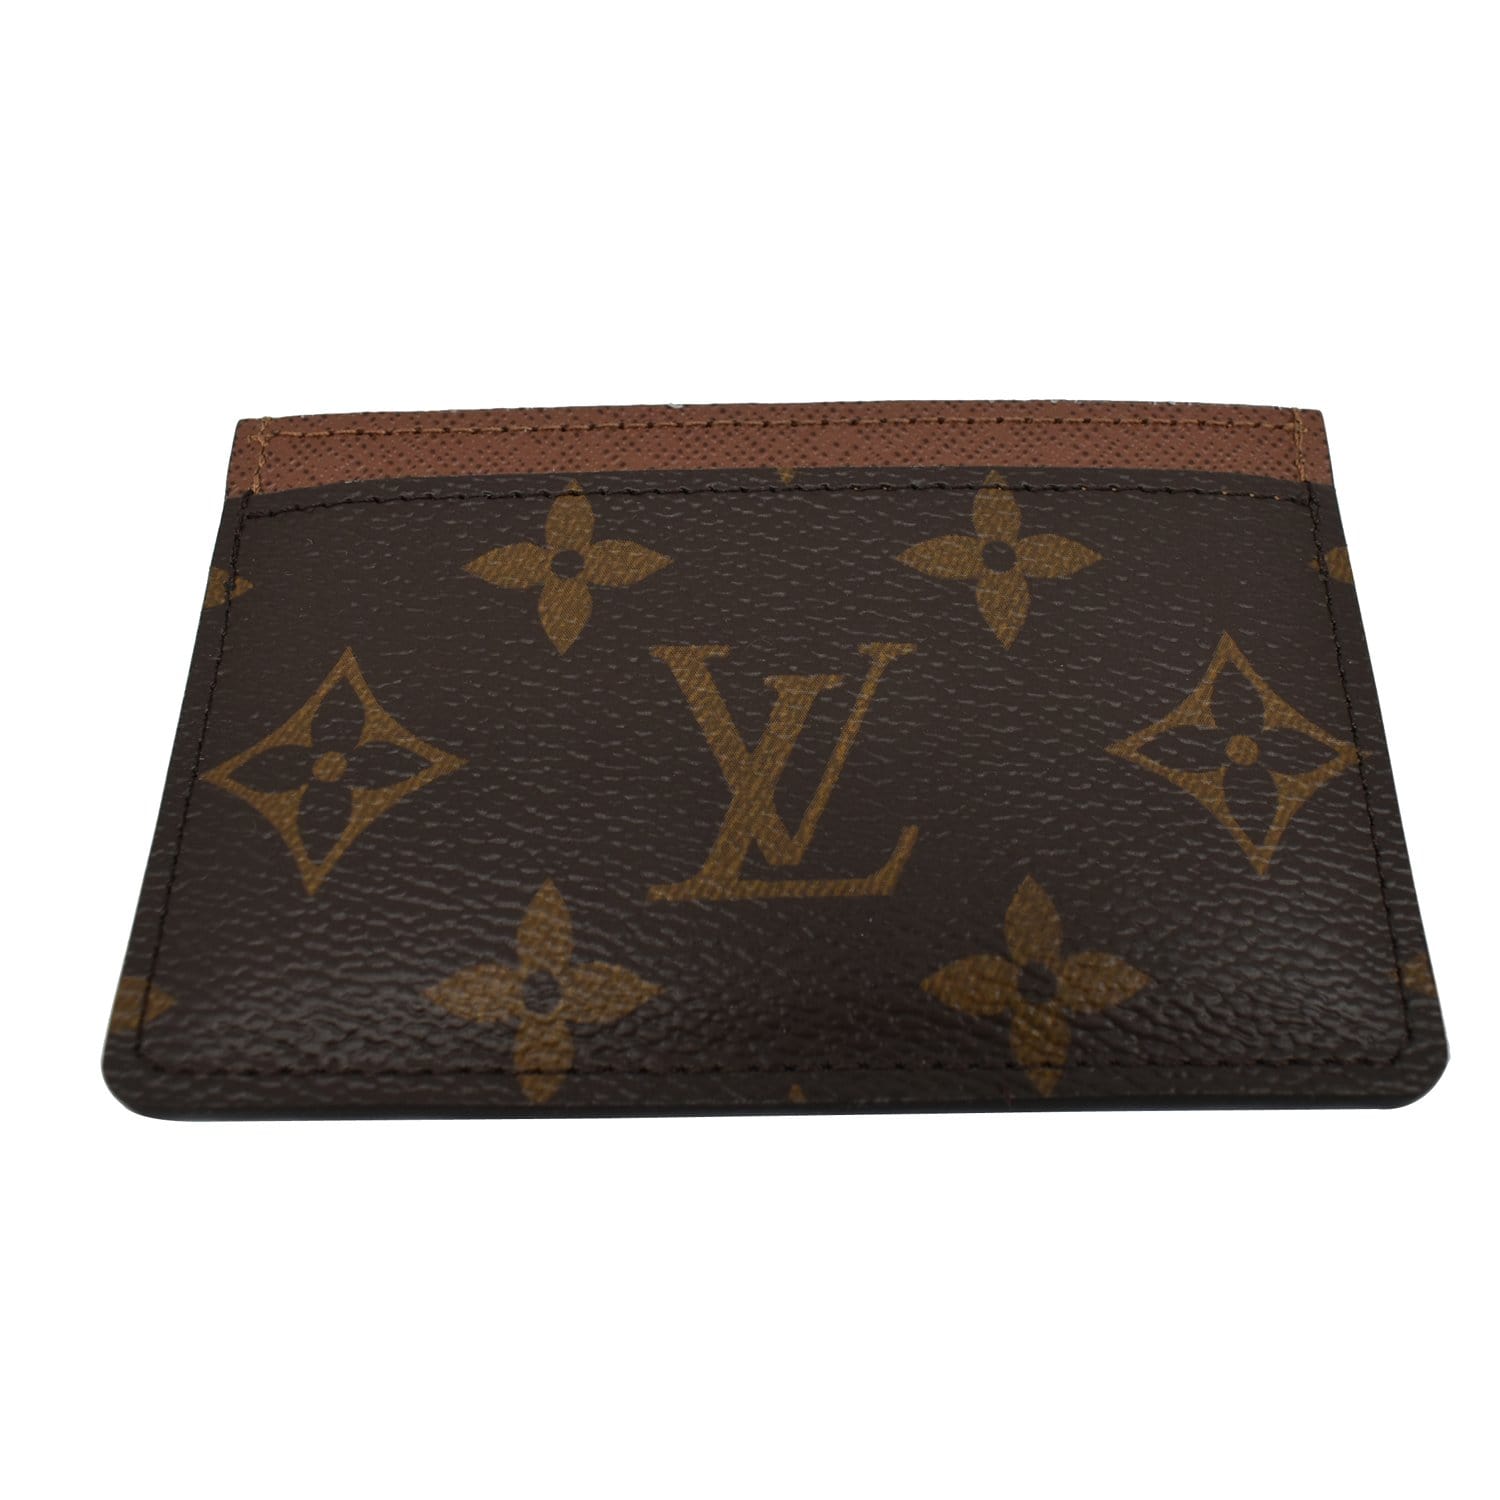 Louis Vuitton Cardholder 325424